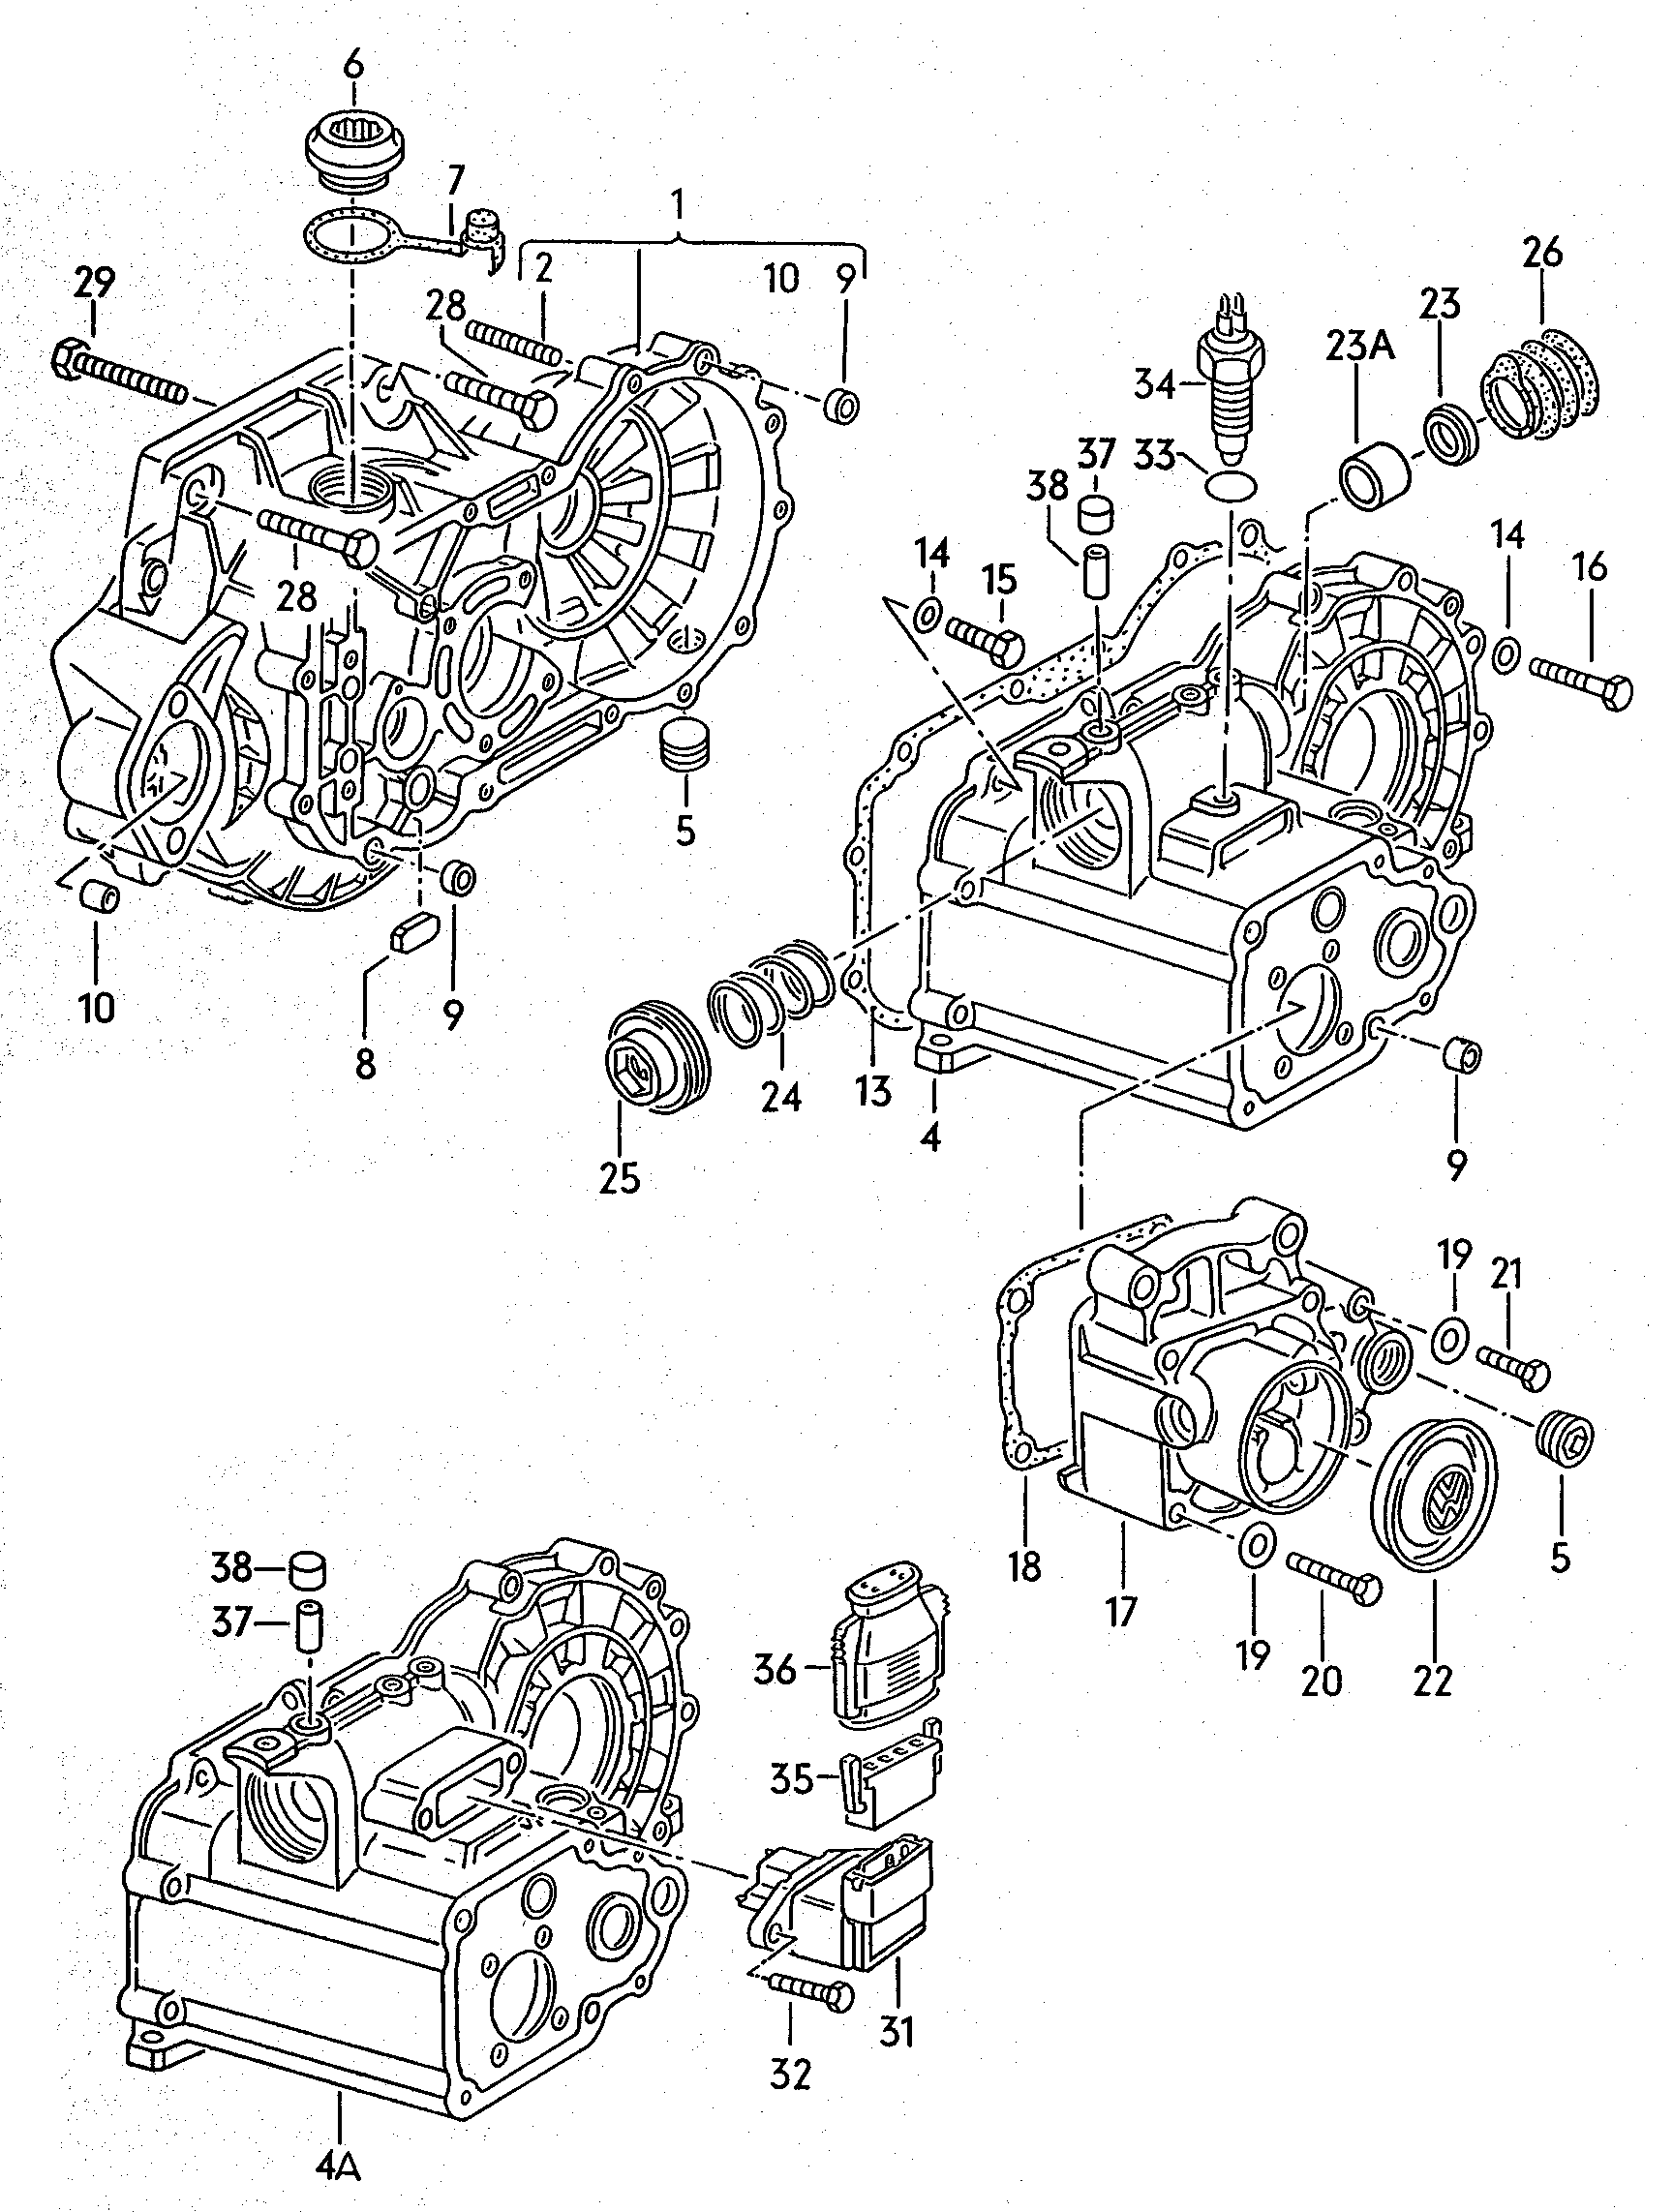 Getriebegehäusefür 5-Gang Schaltgetriebe 1,6-1,8Ltr. - Scirocco - sci